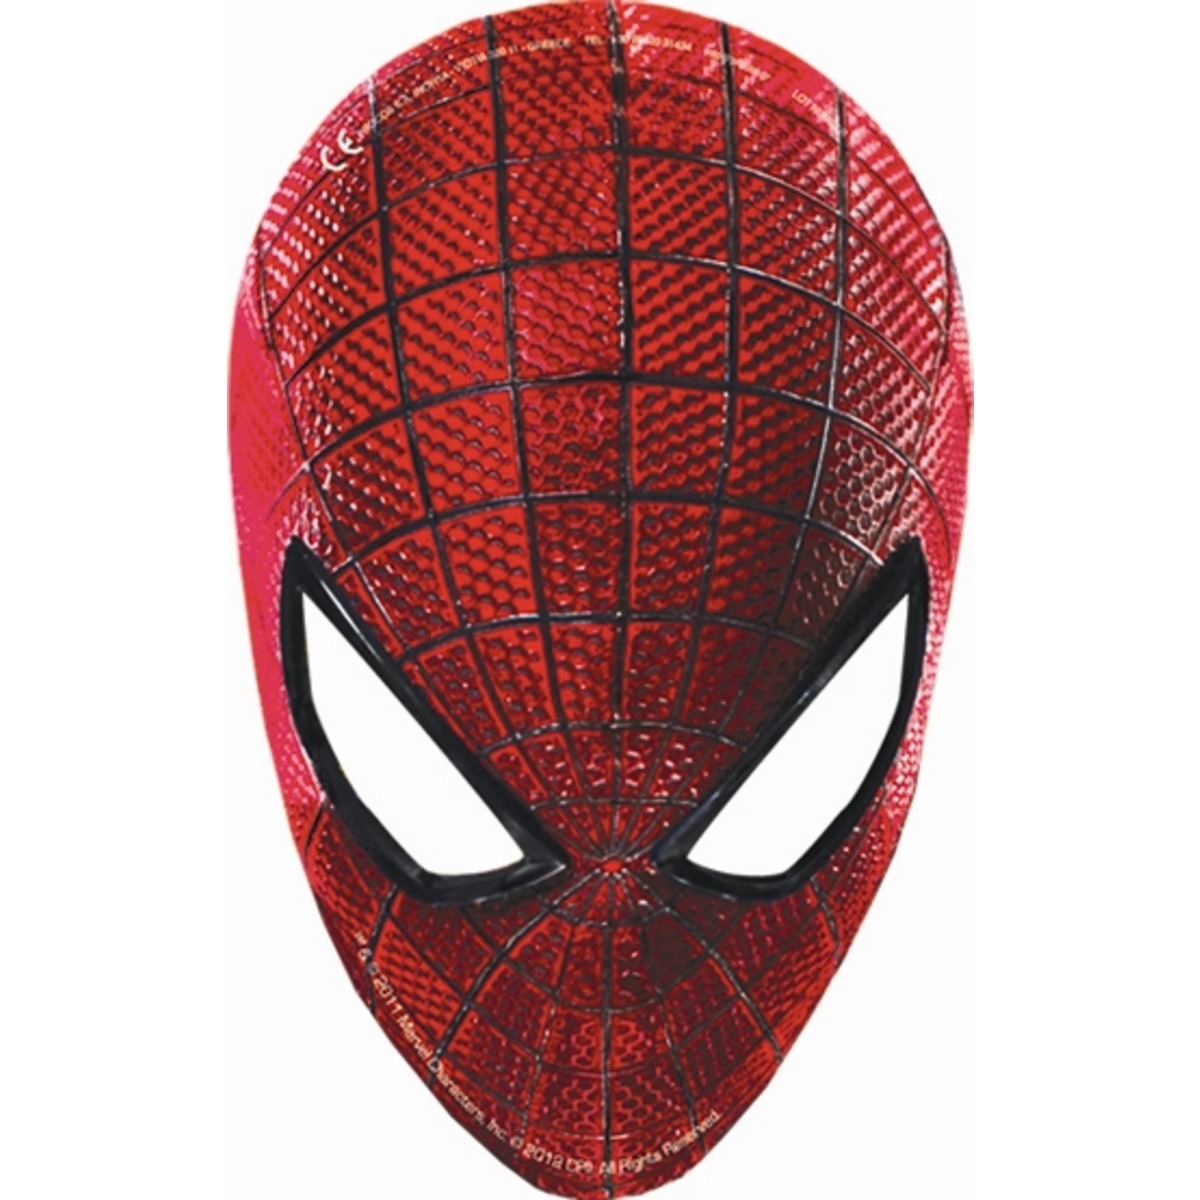 Kit fête anniversaire Spiderman Marvel ballon, serviette de table